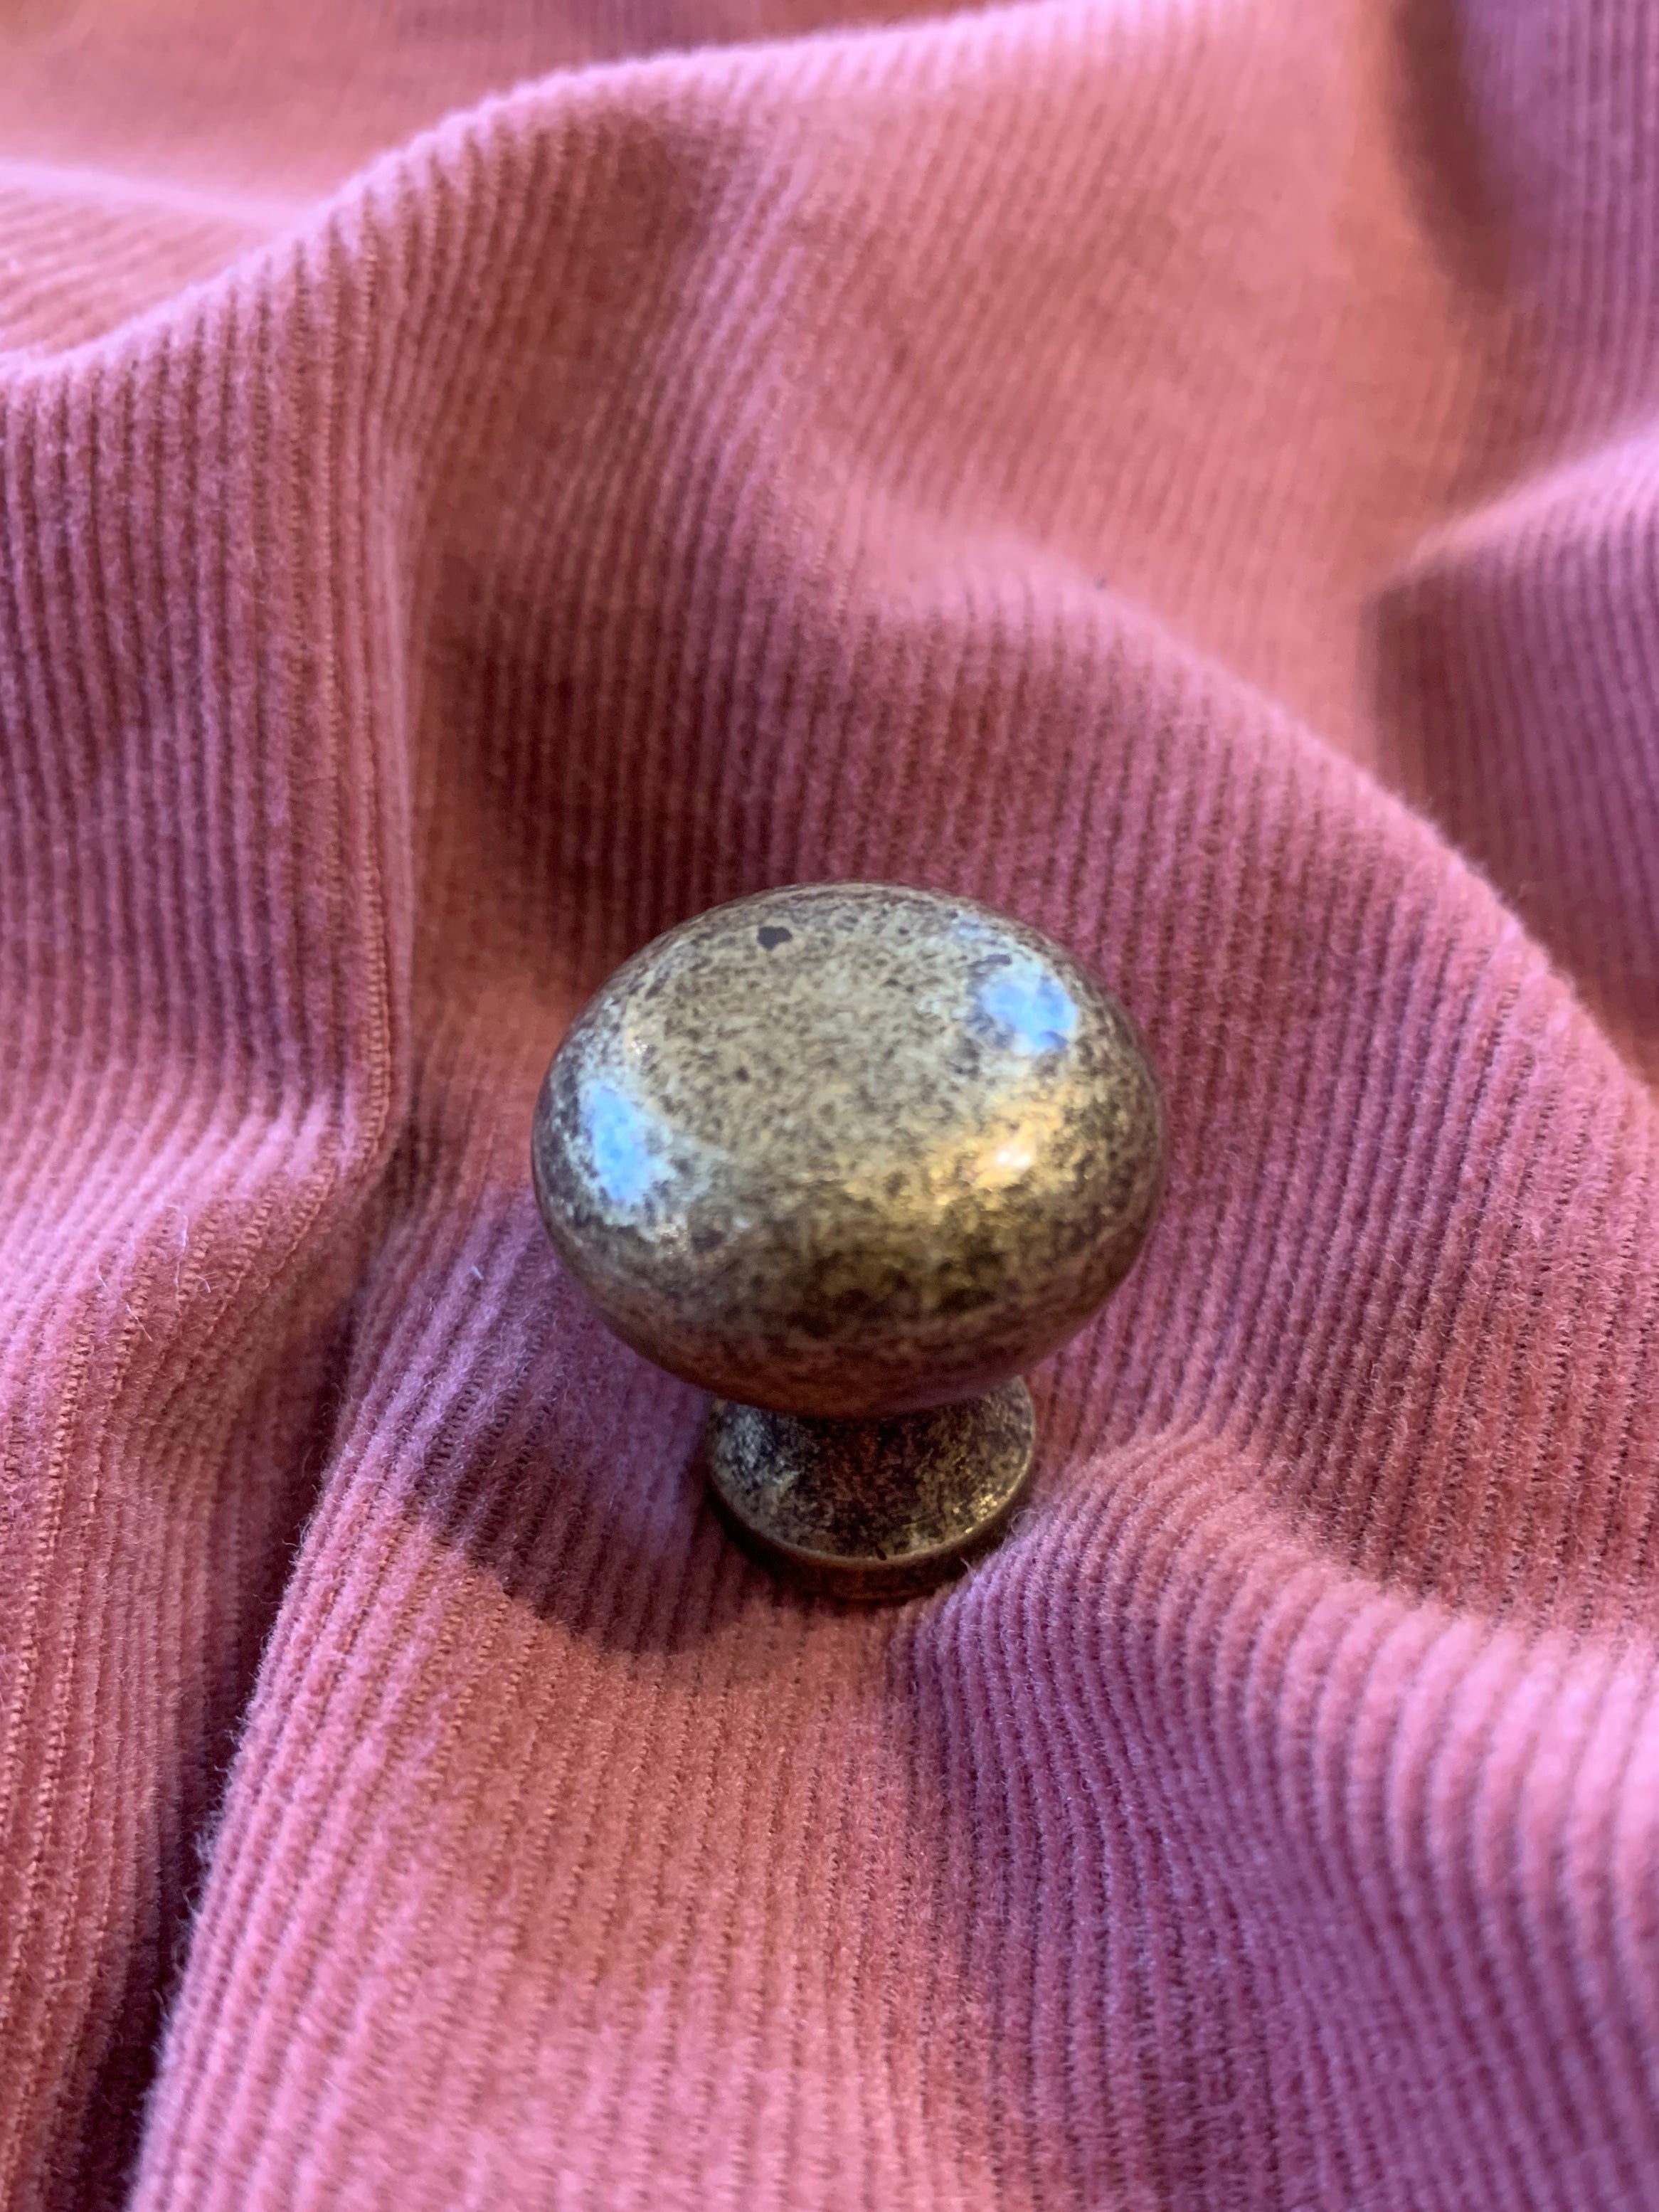 Plain Button Cabinet Knob Antique Brass